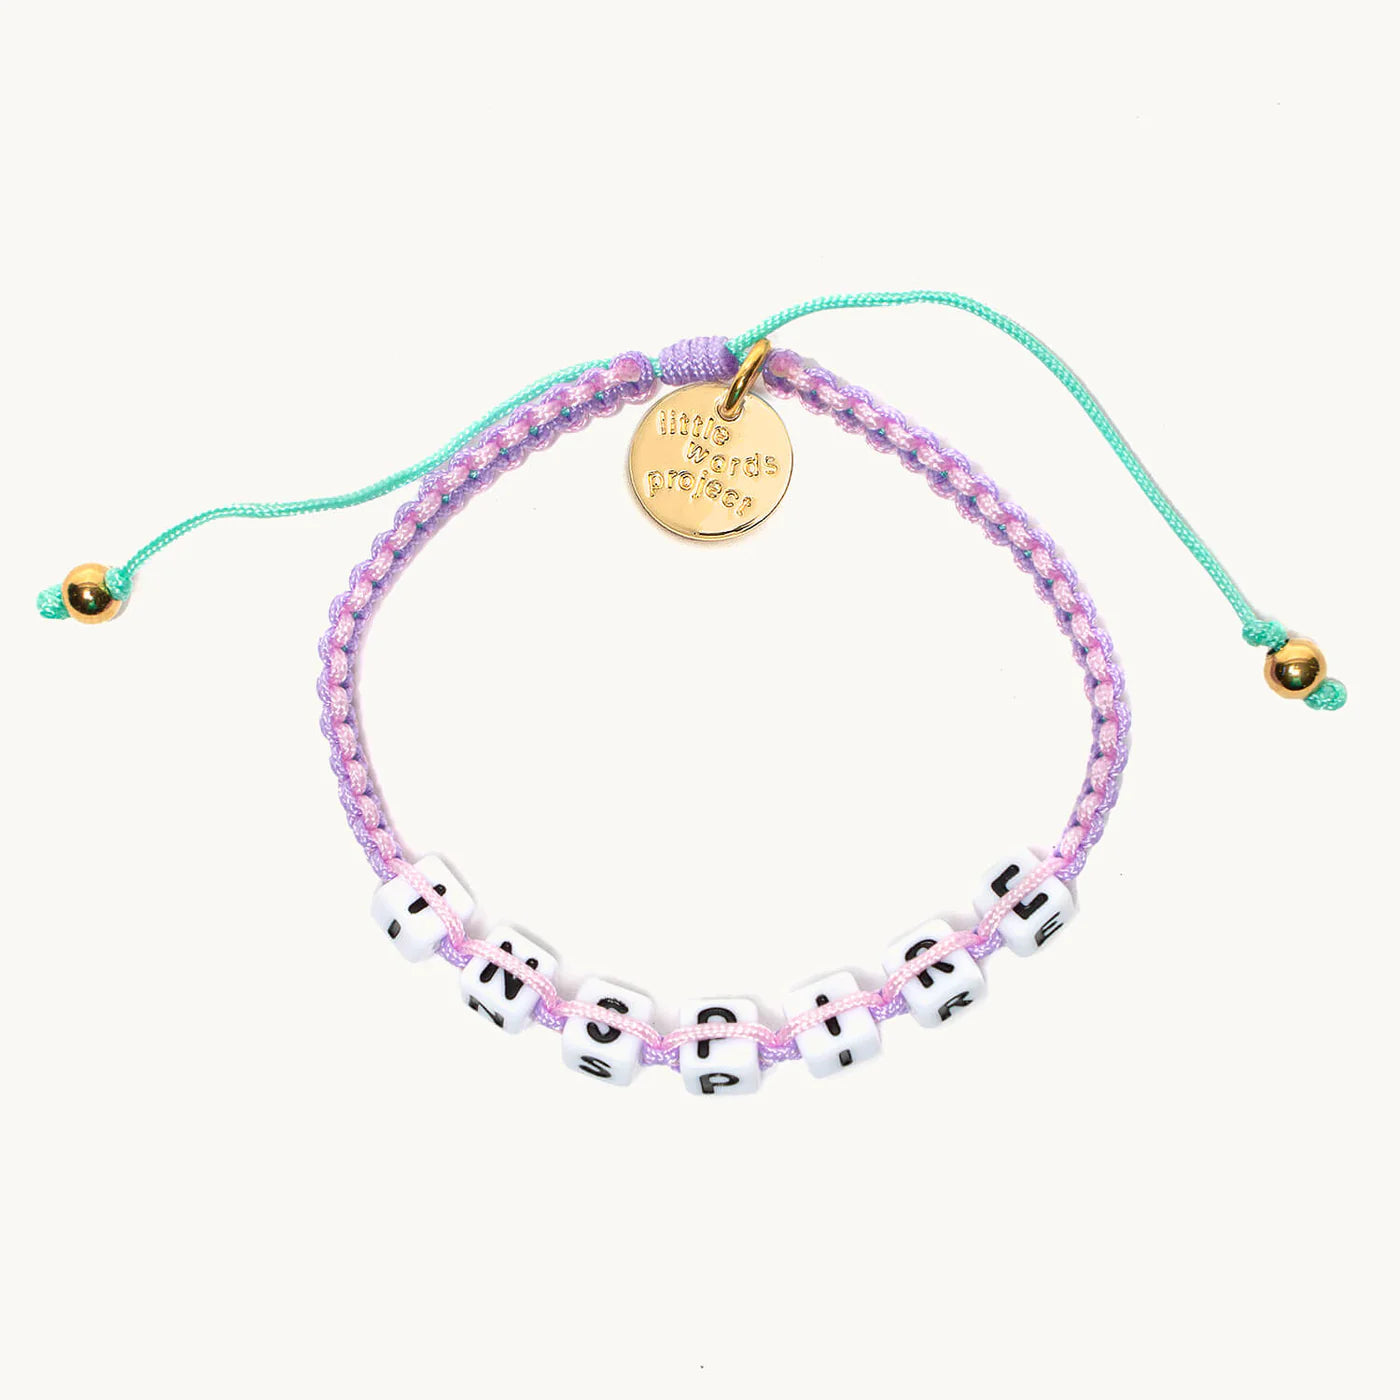 Inspire / Little Words Project Woven Bracelet